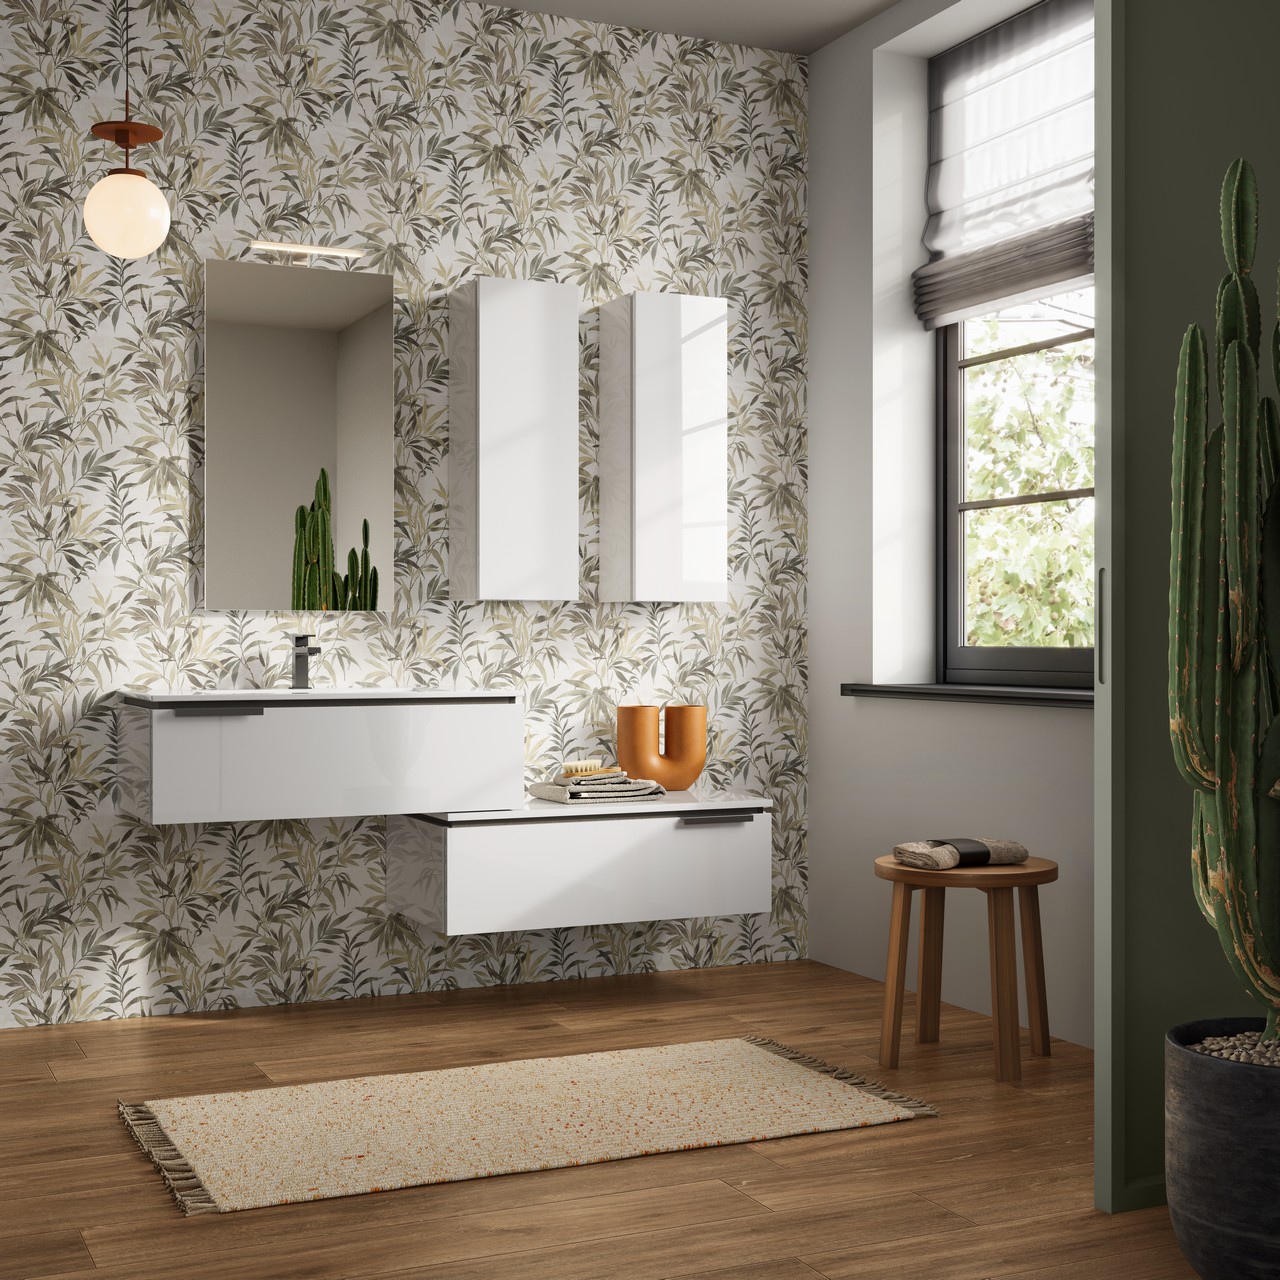 Salle de bains moderne avec grès cérame effet papier peint floral et sol effet bois. - Inspirations Iperceramica